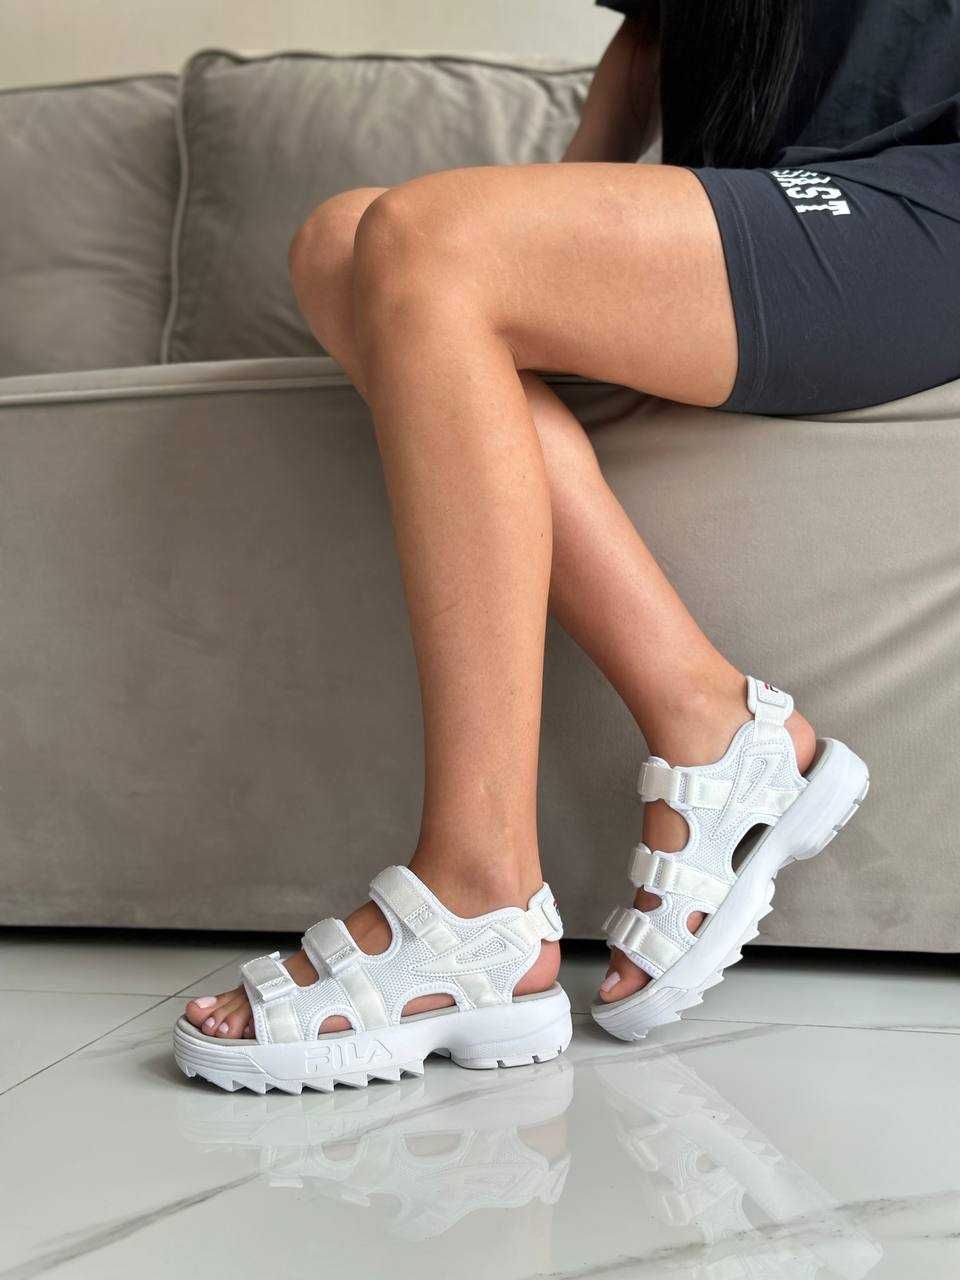 Жіночі сандалі Fila Disruptor 2 Sandal білий 6004 НОВИЗНА ХІТ